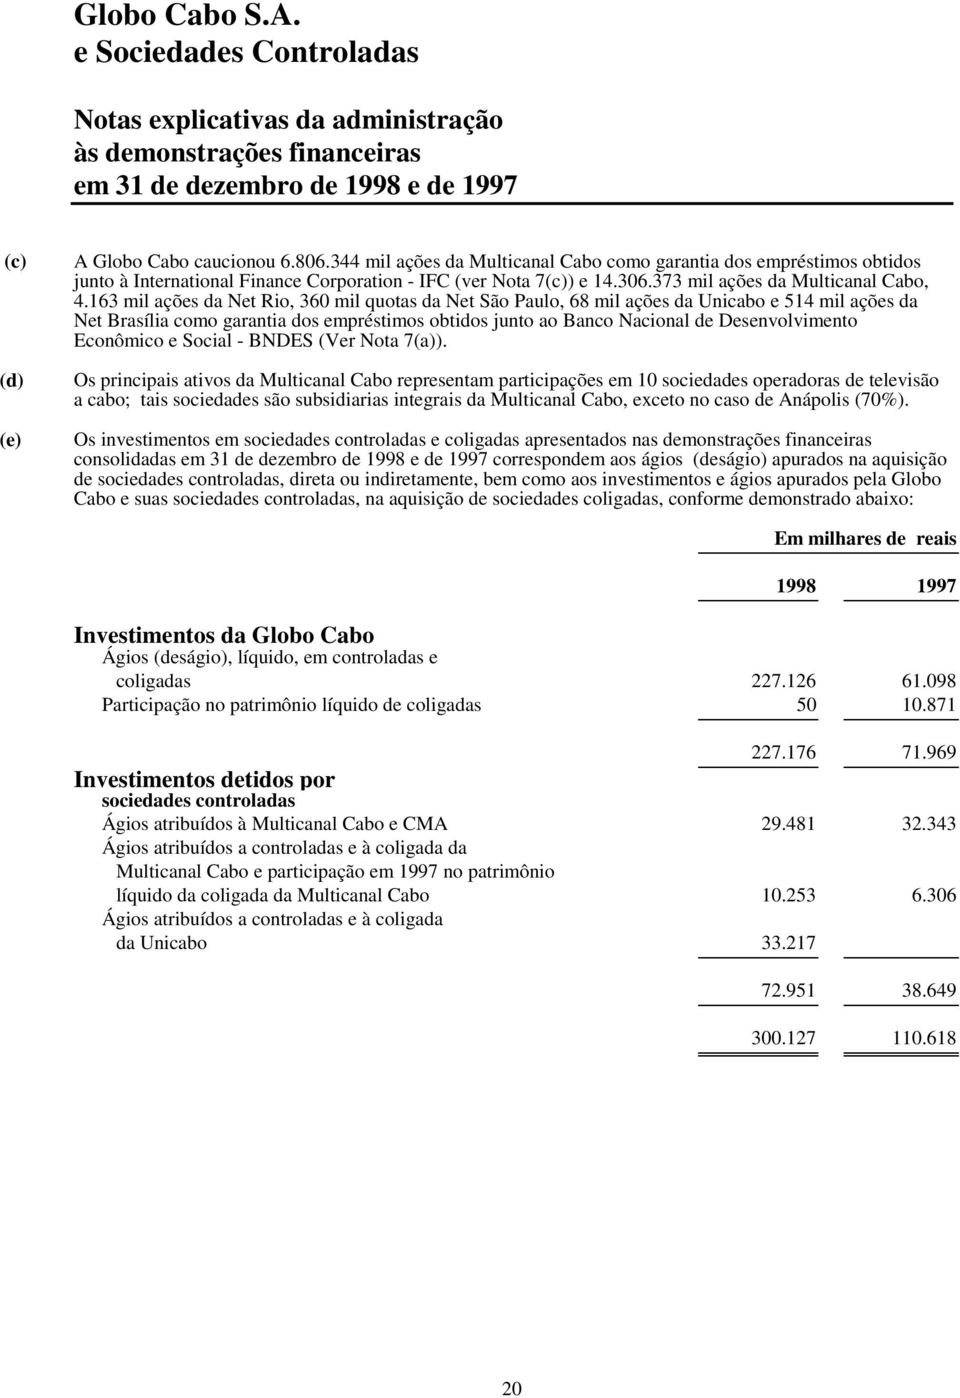 163 mil ações da Net Rio, 360 mil quotas da Net São Paulo, 68 mil ações da Unicabo e 514 mil ações da Net Brasília como garantia dos empréstimos obtidos junto ao Banco Nacional de Desenvolvimento